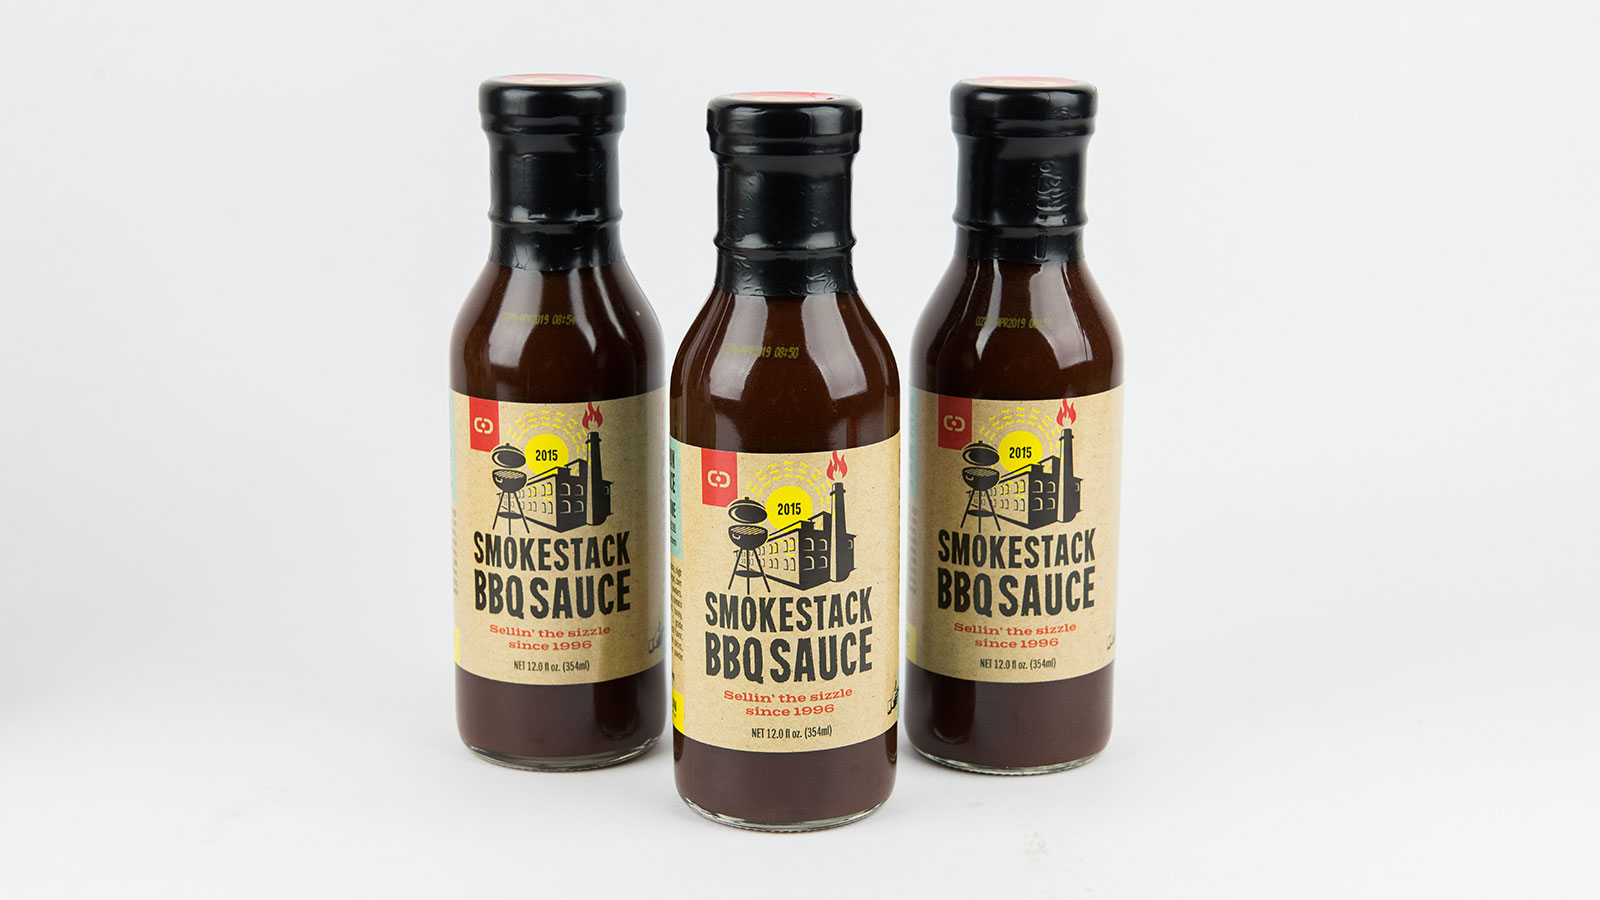 Smokestack BBQ Sauce Promotion Bottles